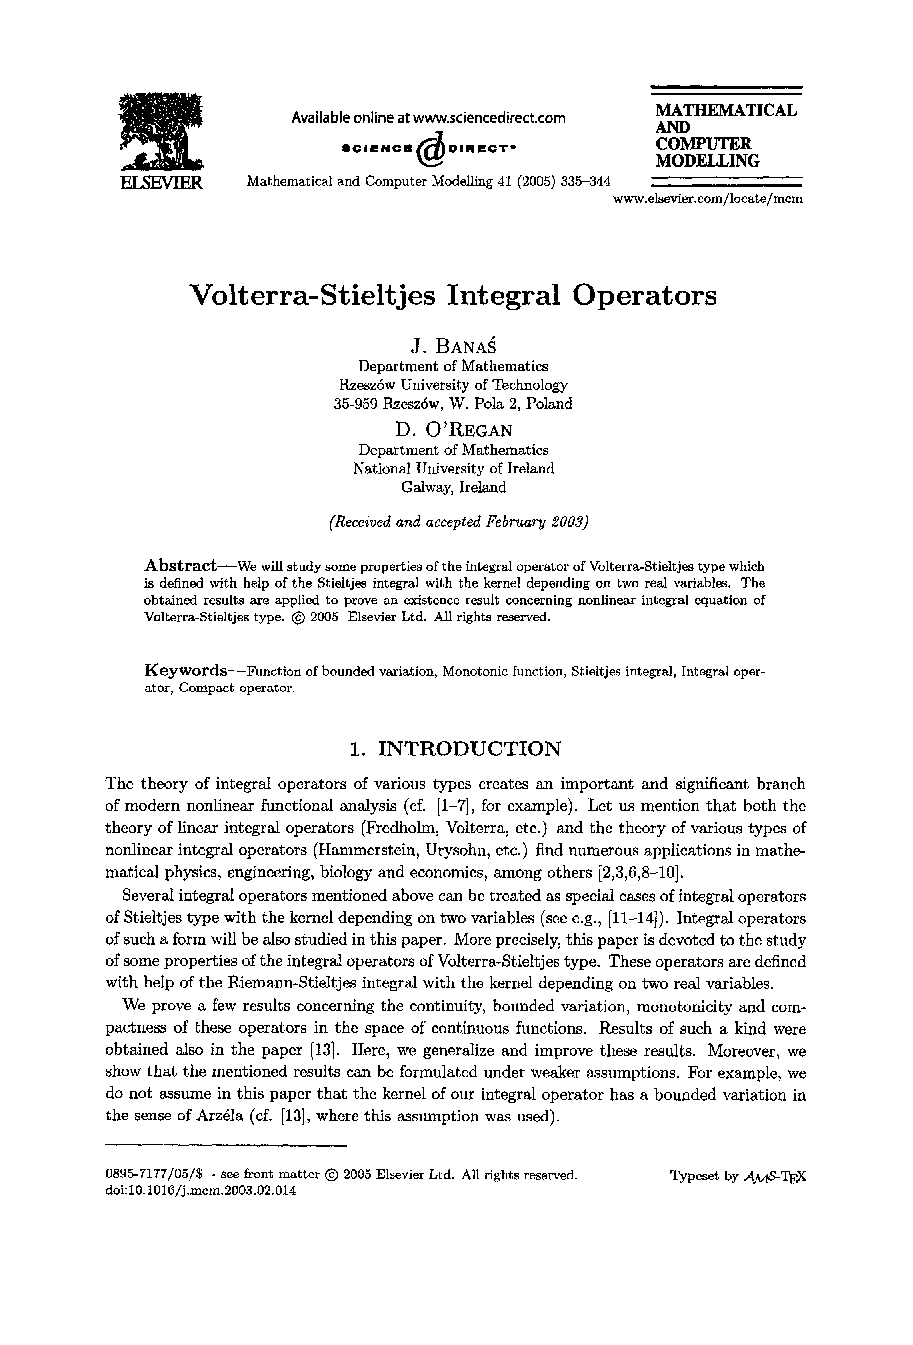 Volterra-stieltjes integral operators